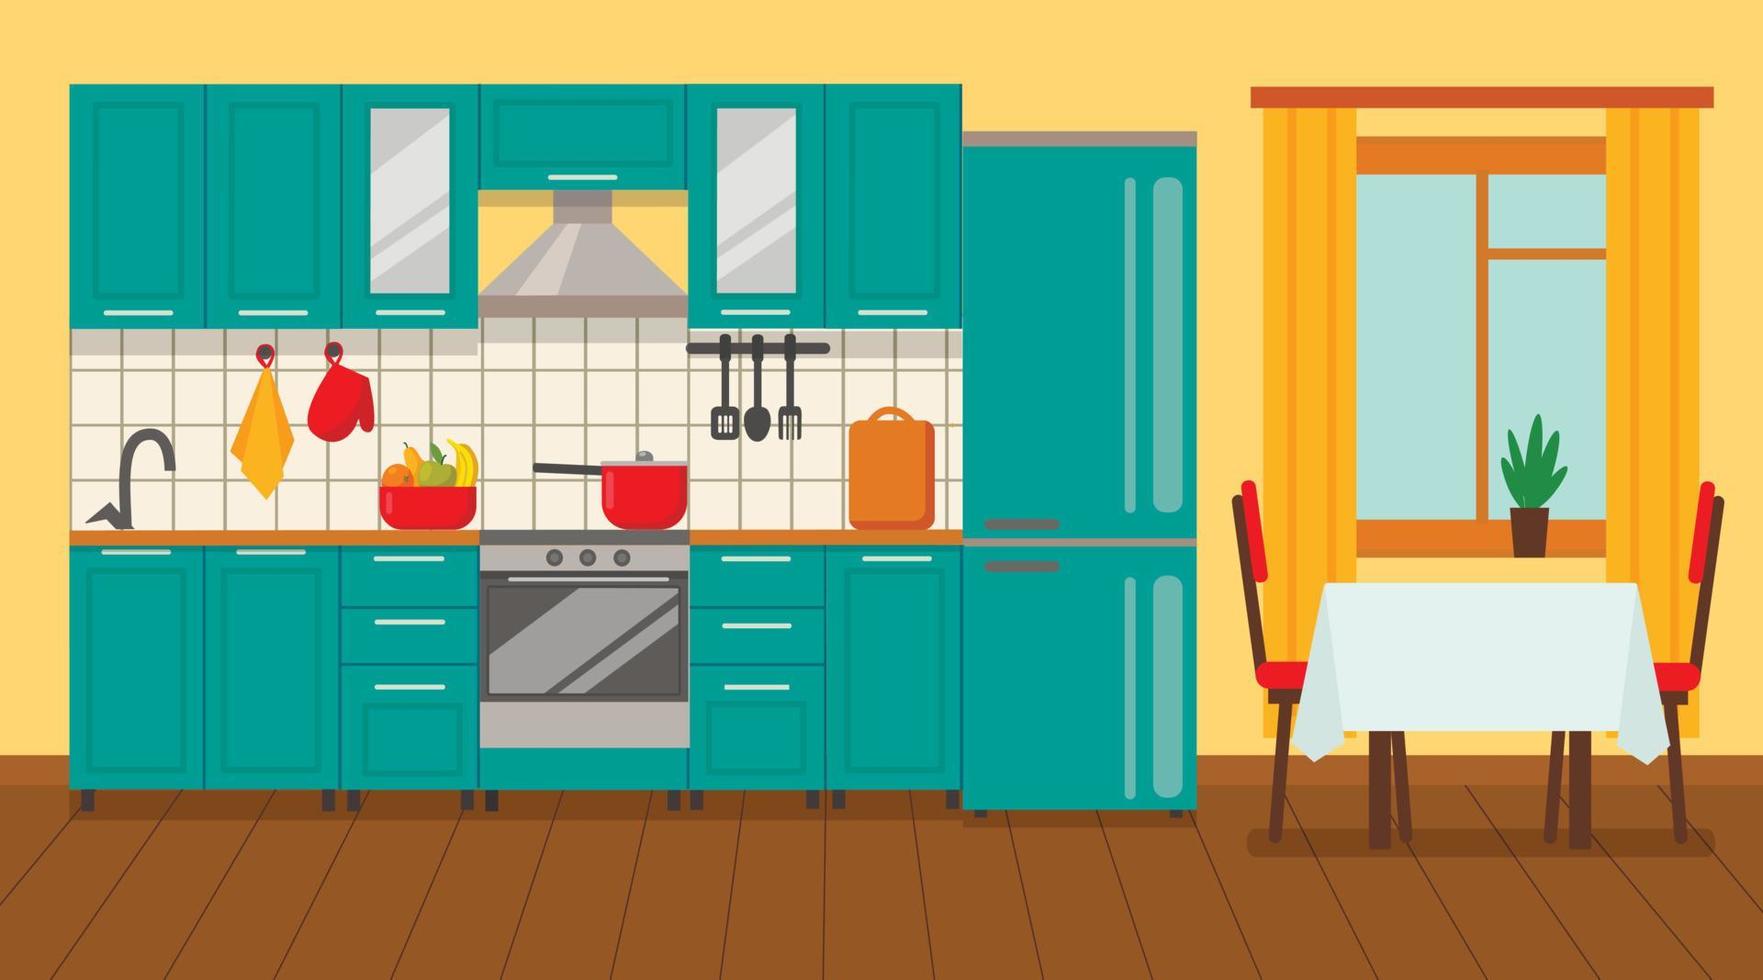 interno della cucina con mobili e piano cottura, credenza, stoviglie, frigorifero e utensili. illustrazione vettoriale in stile cartone animato piatto.